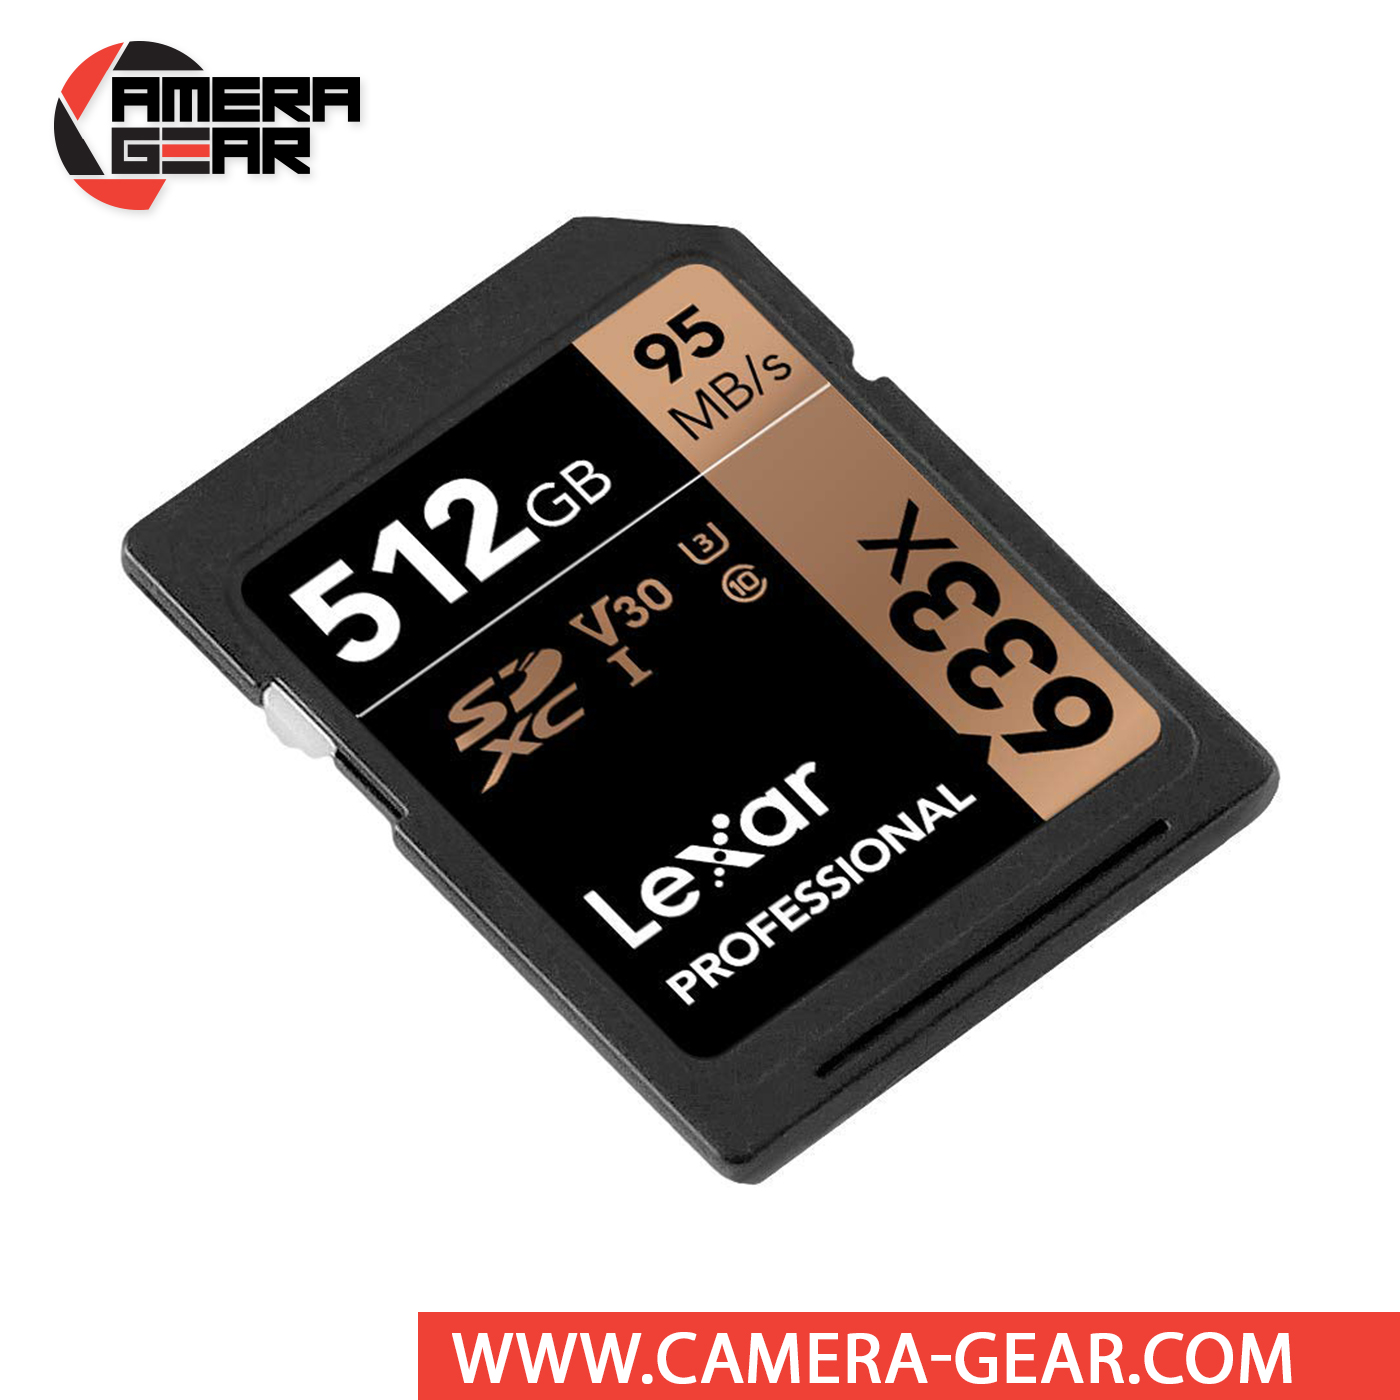 13€02 sur Cartes mémoire Lexar High-Performance 633x 512 Go